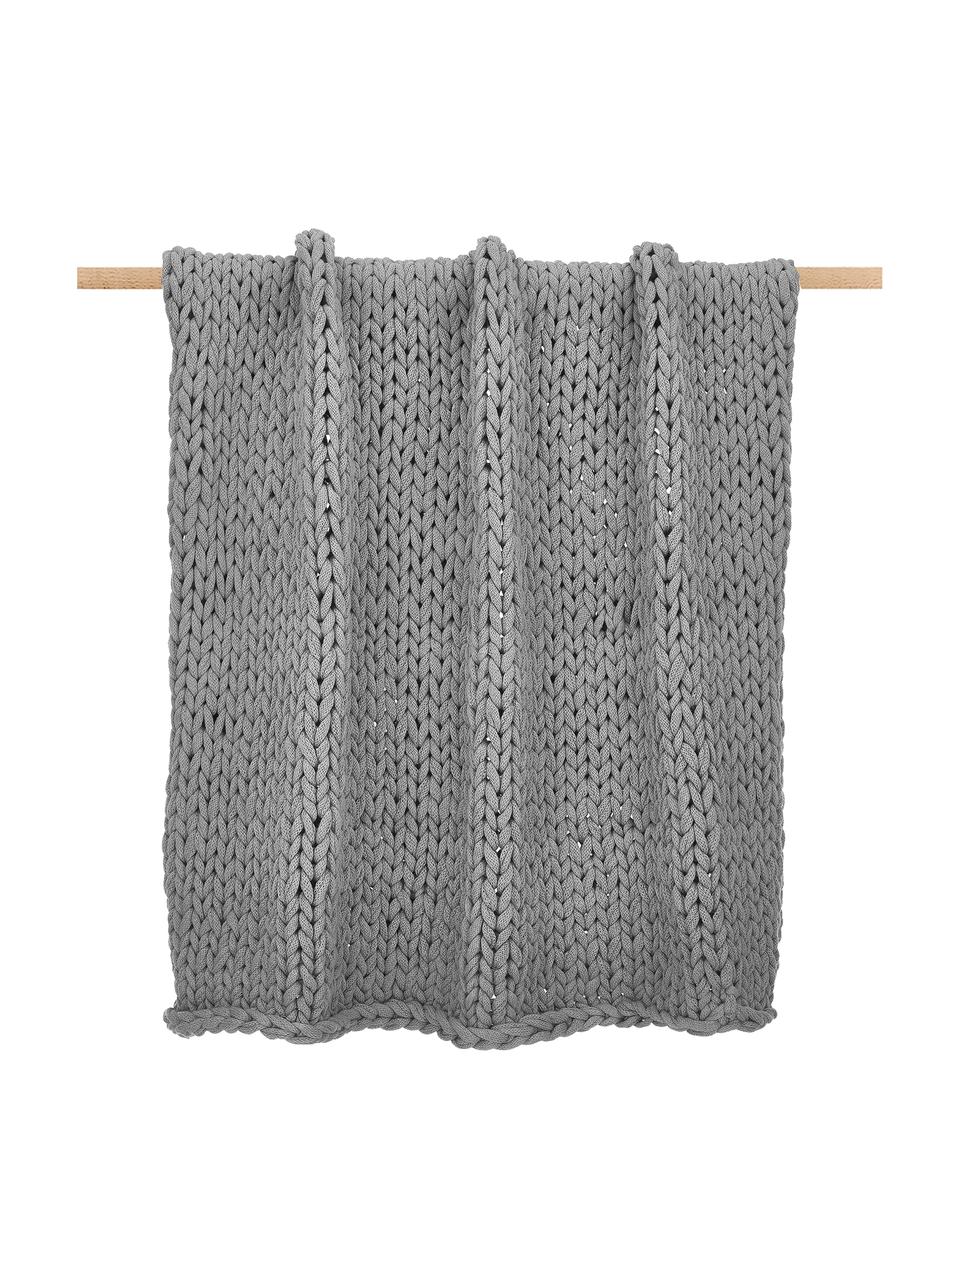 Handgemaakte dikke deken Adyna in lichtgrijs, 100% polyacryl, Lichtgrijs, B 130 x L 170 cm